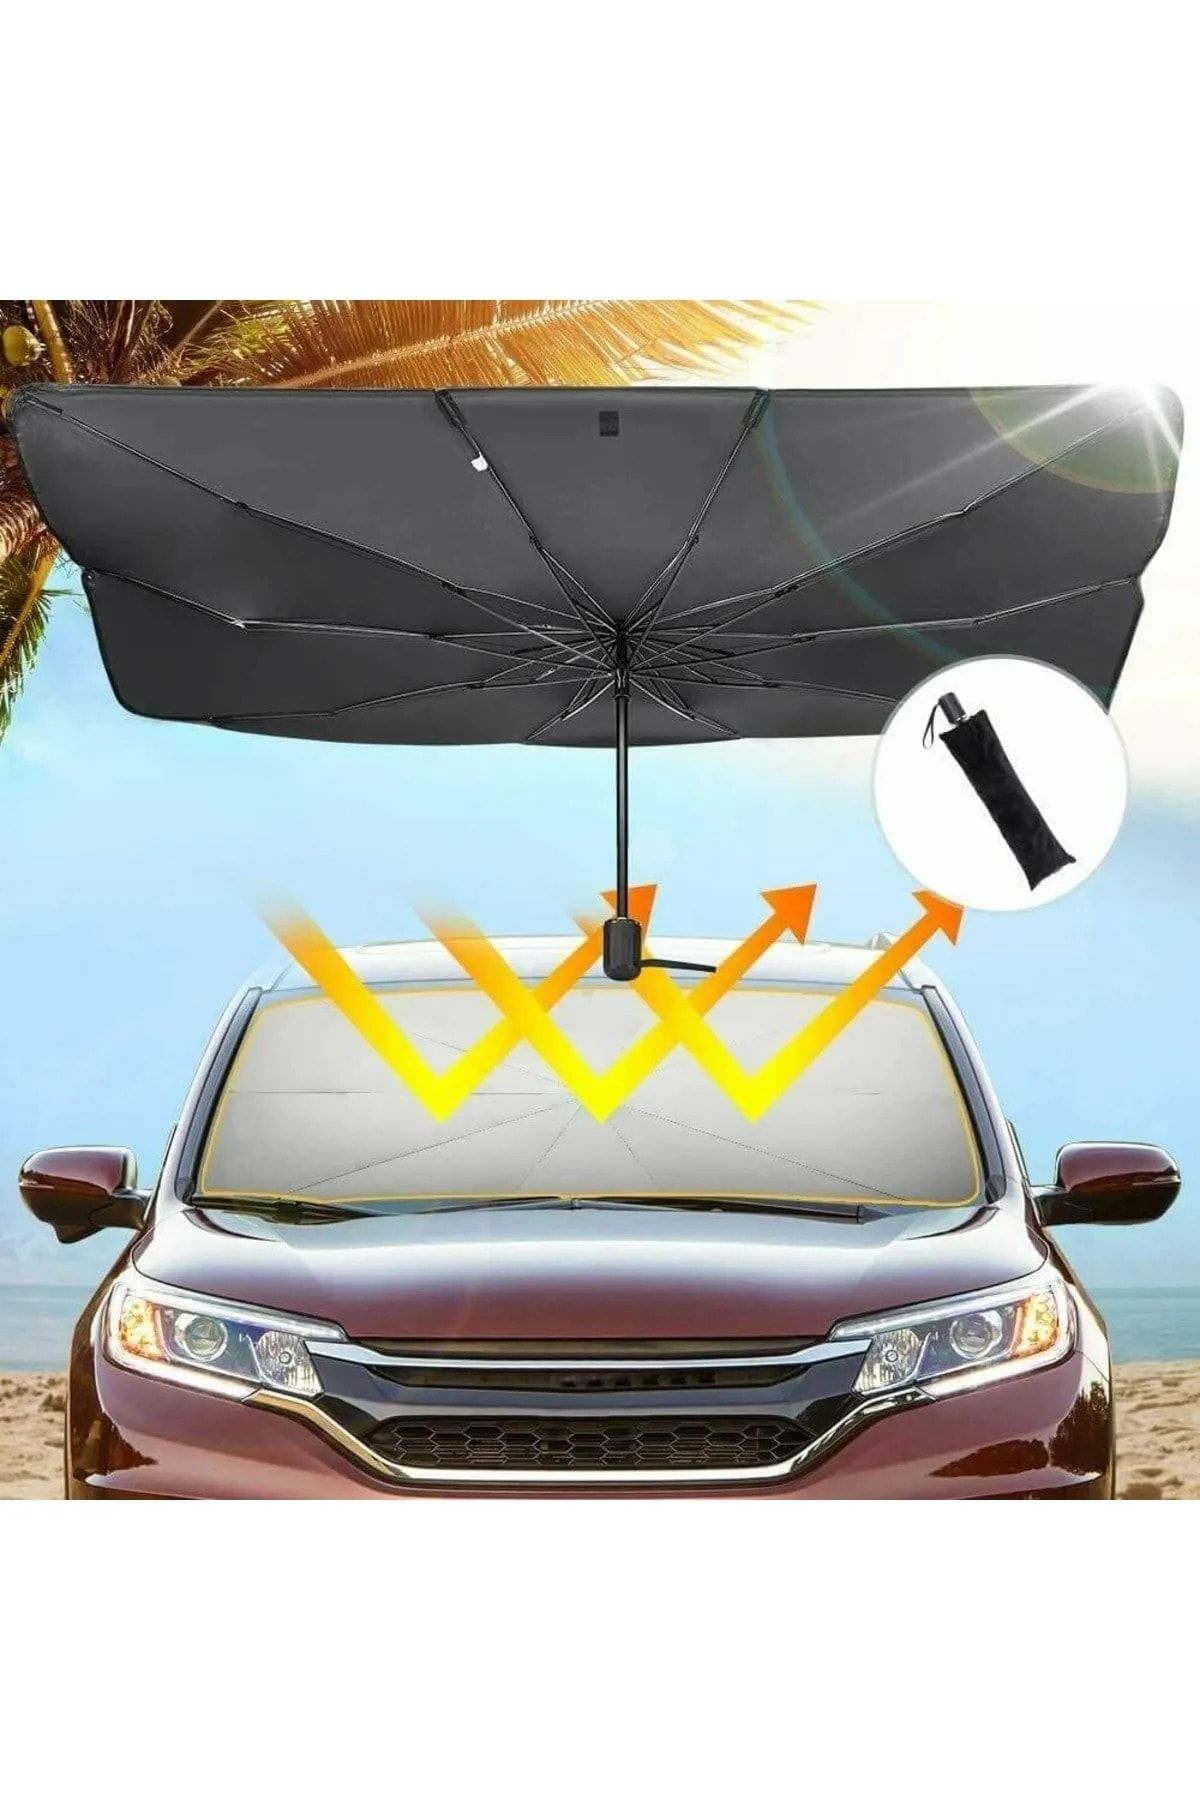 Universal Nissan Almera Araba Ön Cam Güneşlik Katlanabilir Güneşlik Şemsiye Ön Cam Gölgelik